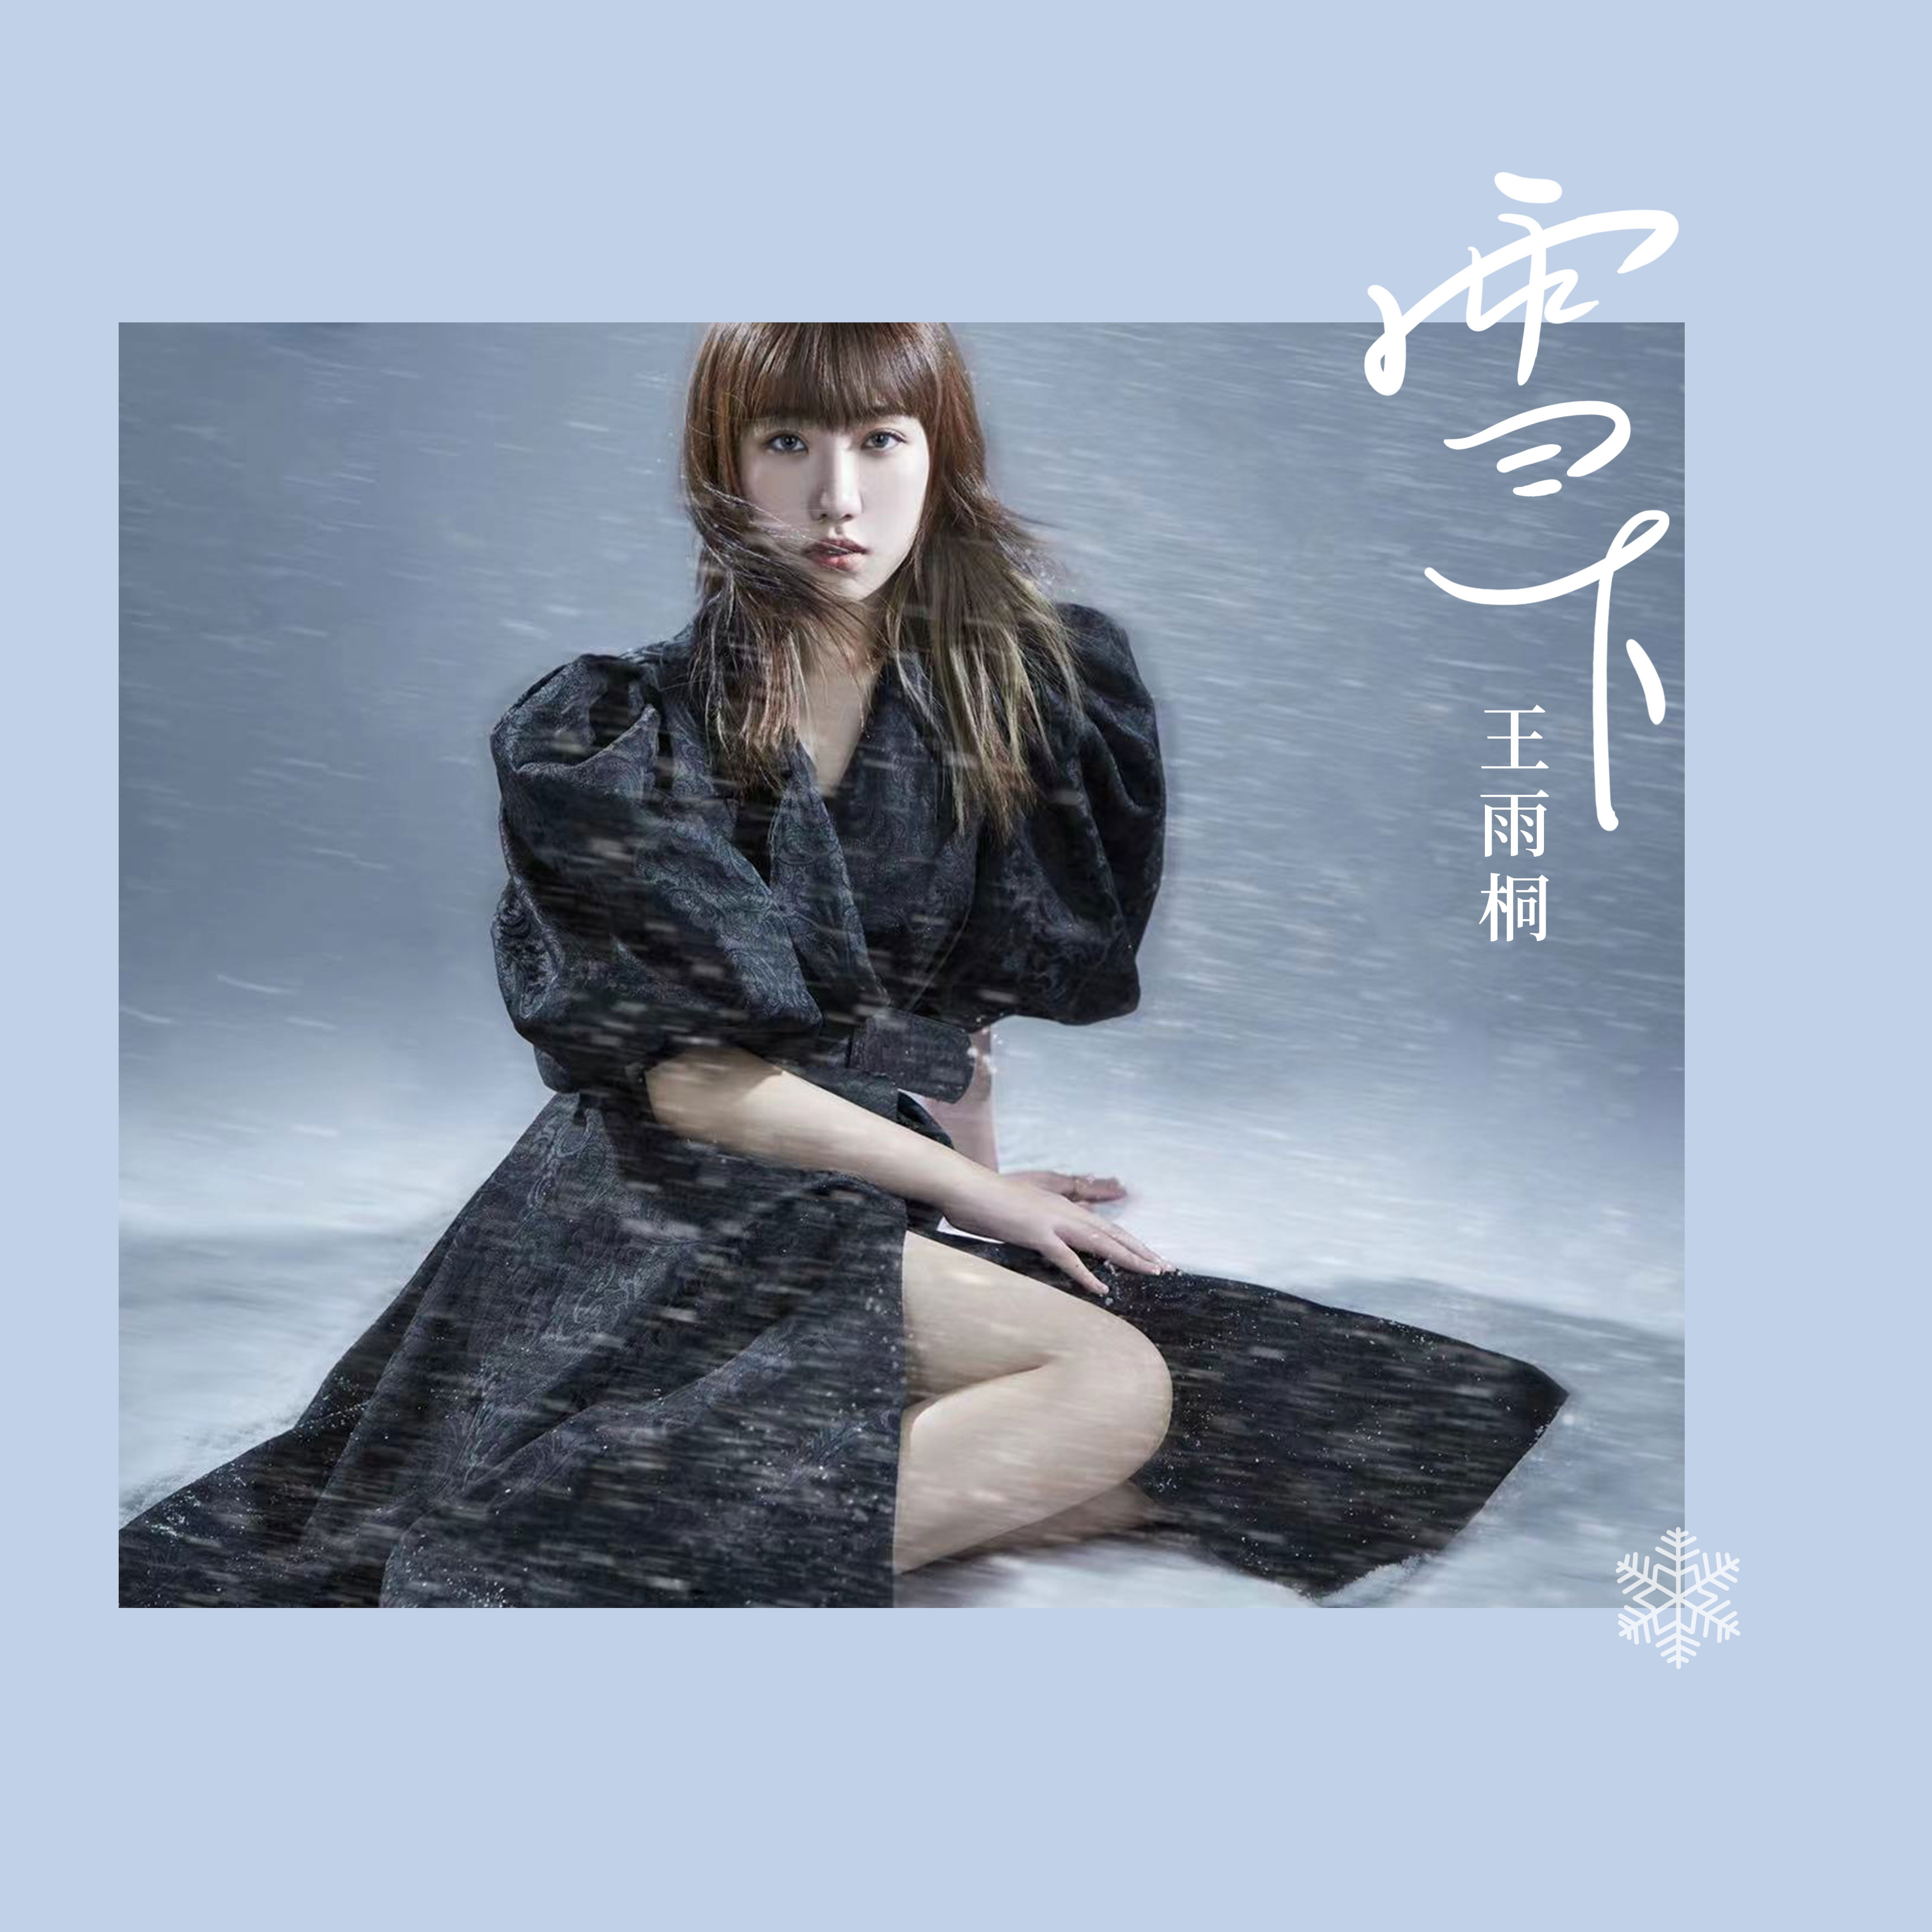 雪下歌词 歌手王雨桐-专辑雪下-单曲《雪下》LRC歌词下载